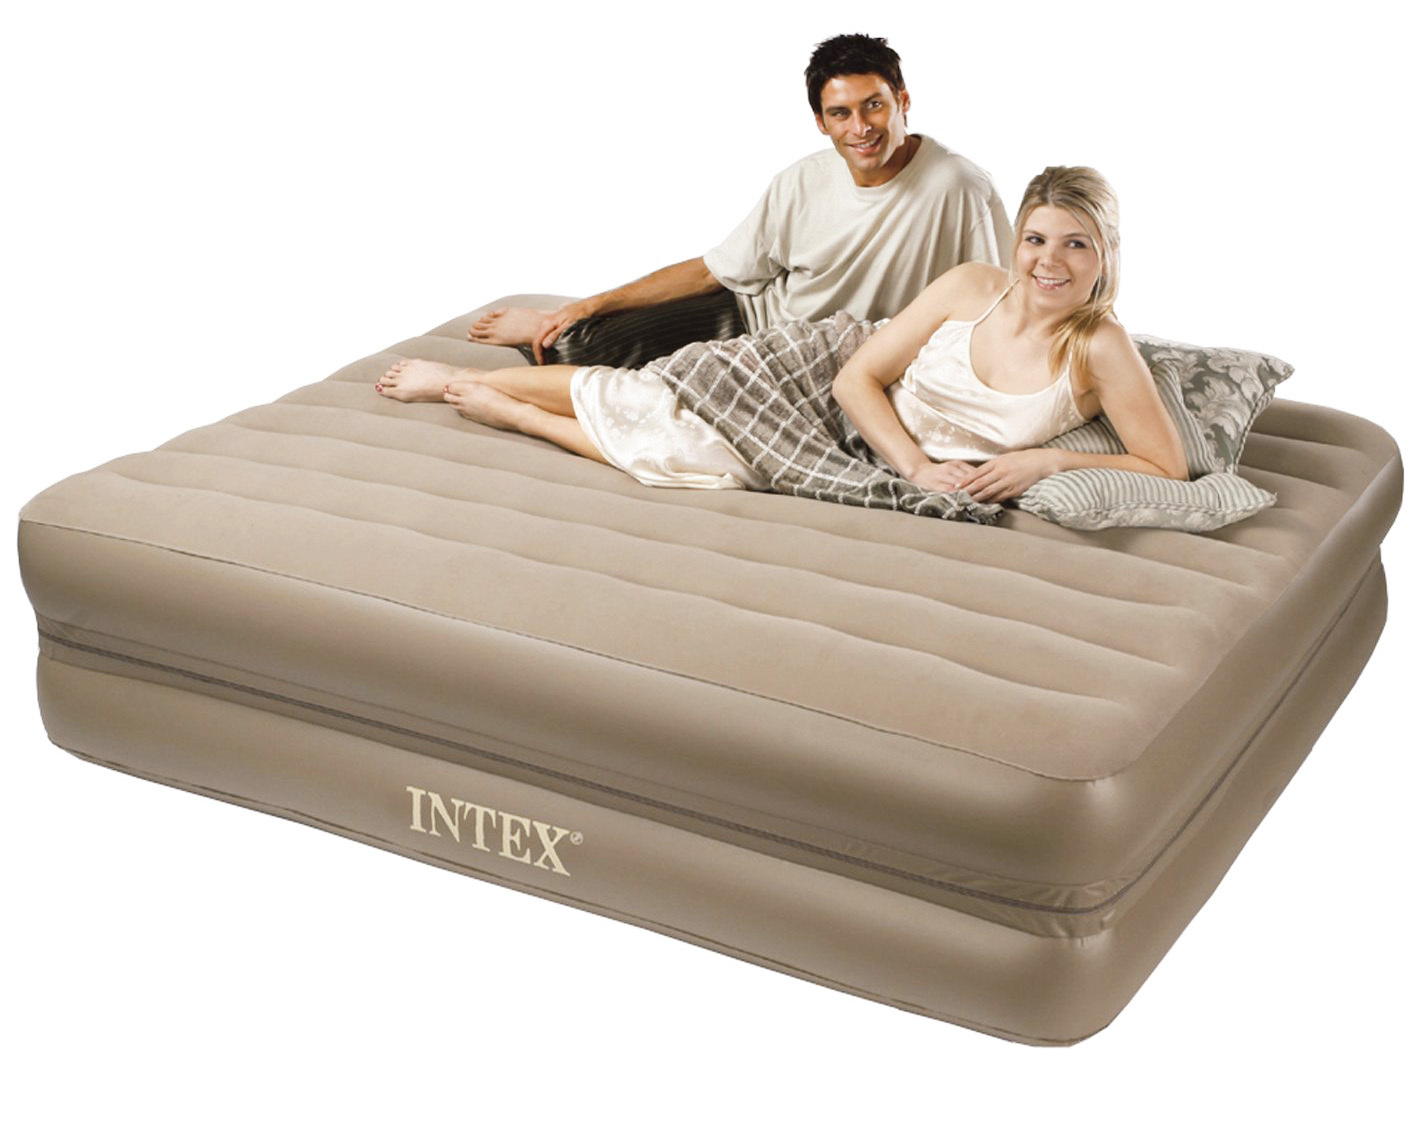 intex comfort frame queen size air mattress